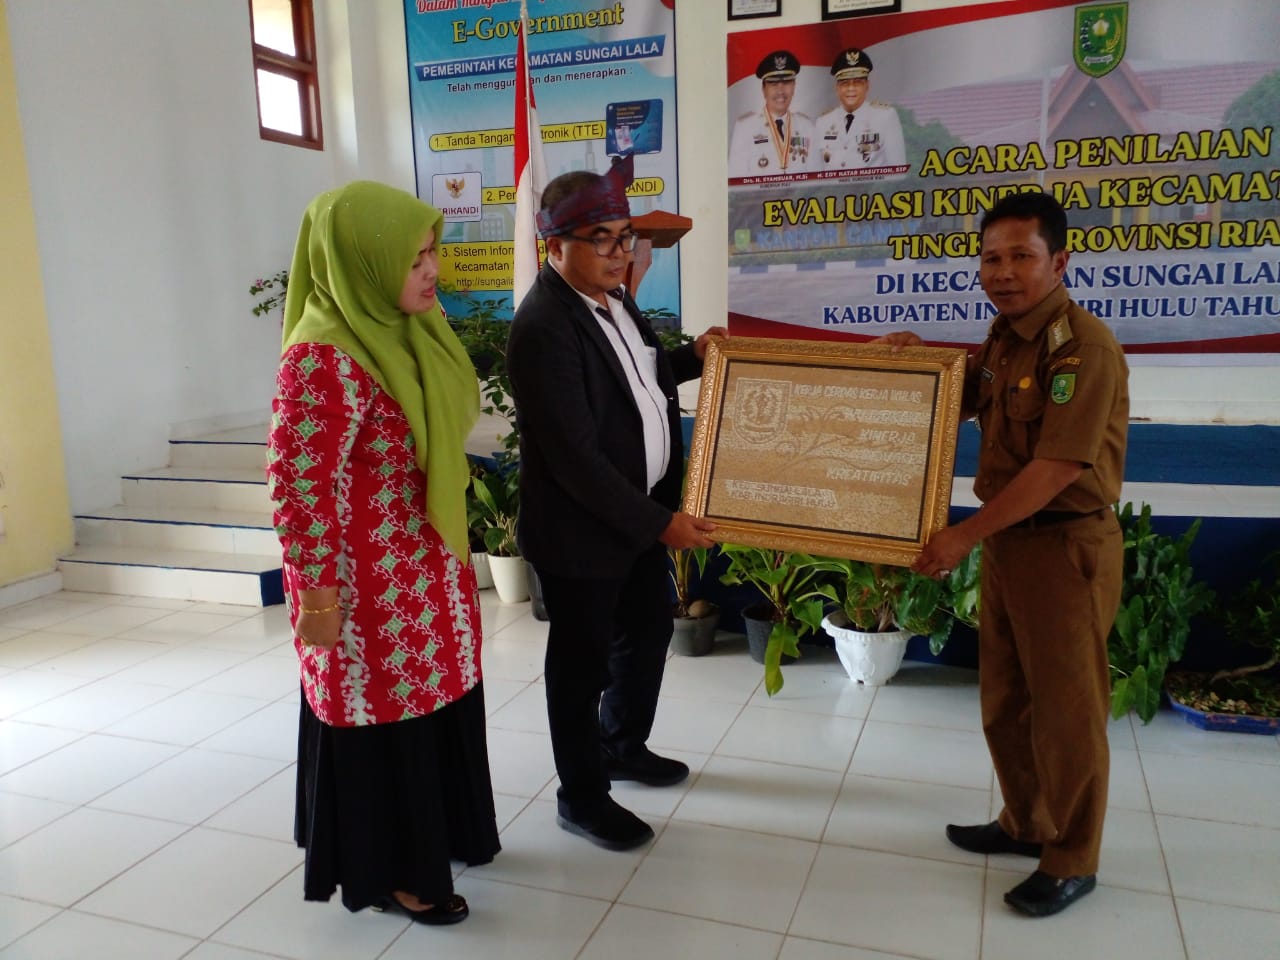 Kecamatan Sungai Lala Wakili Kabupaten Inhu Pada Penilaian EKK Tingkat Provinsi Riau